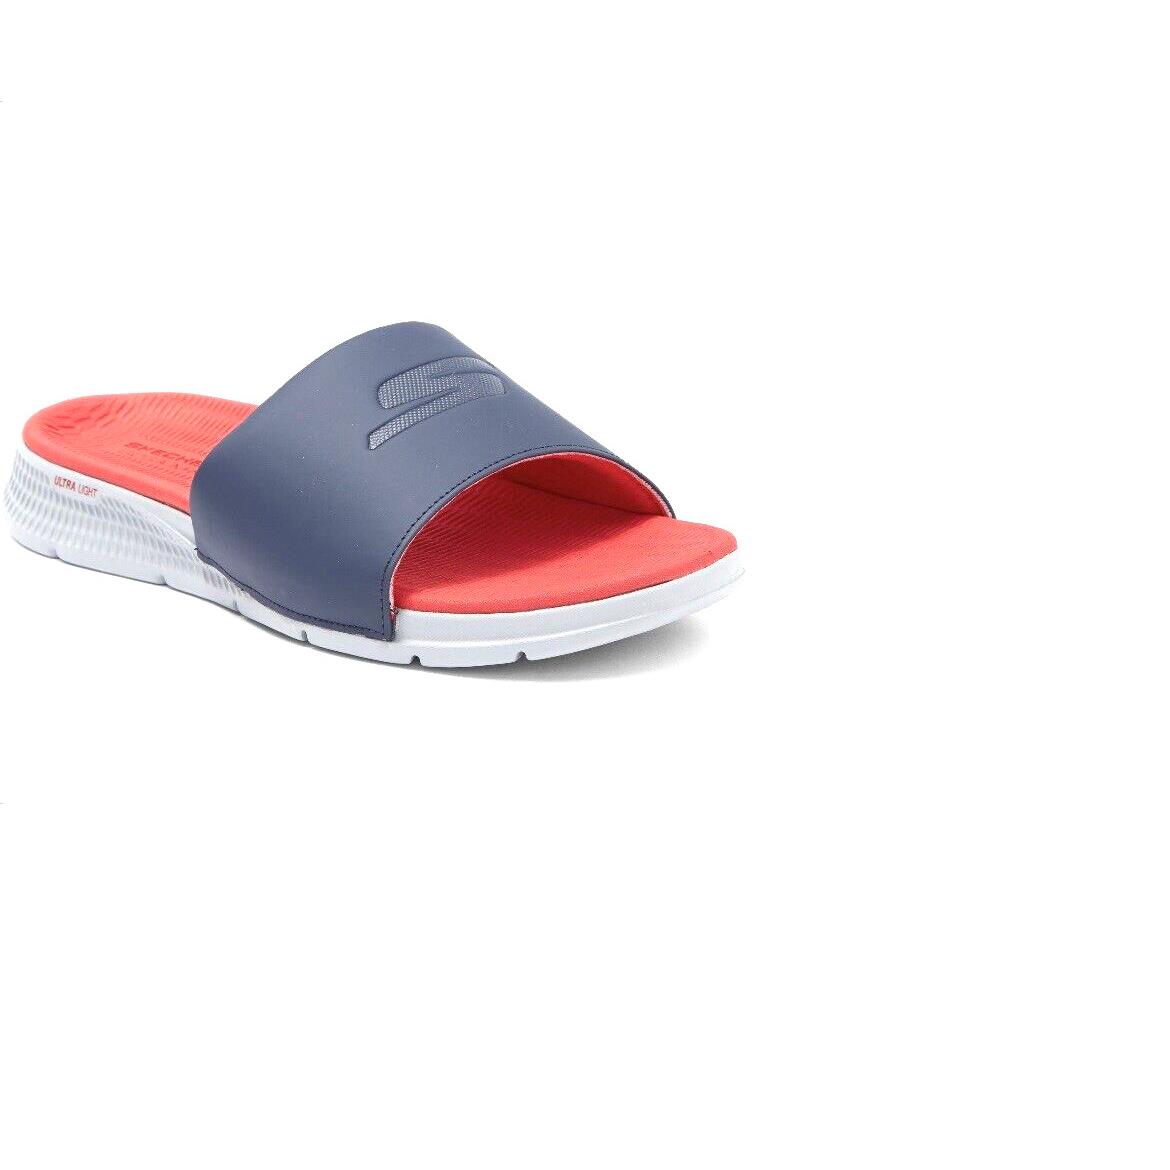 Skechers Go Consistent Blue Gray Red Men`s Flip Flops Sandal Shoes Size 12